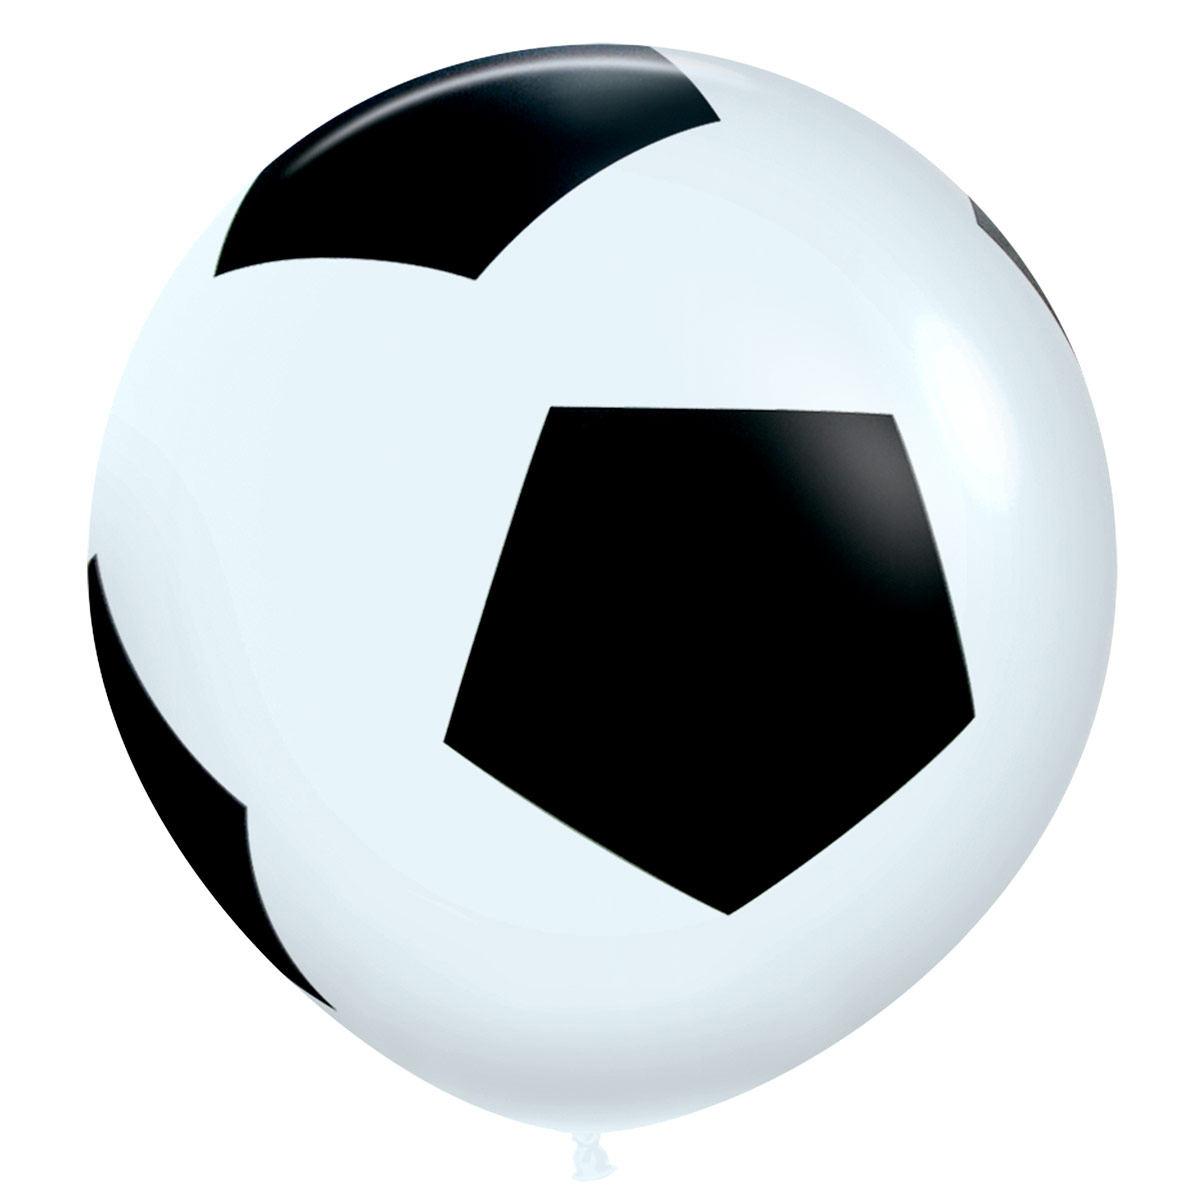 Jätteballong, fotboll 90cm